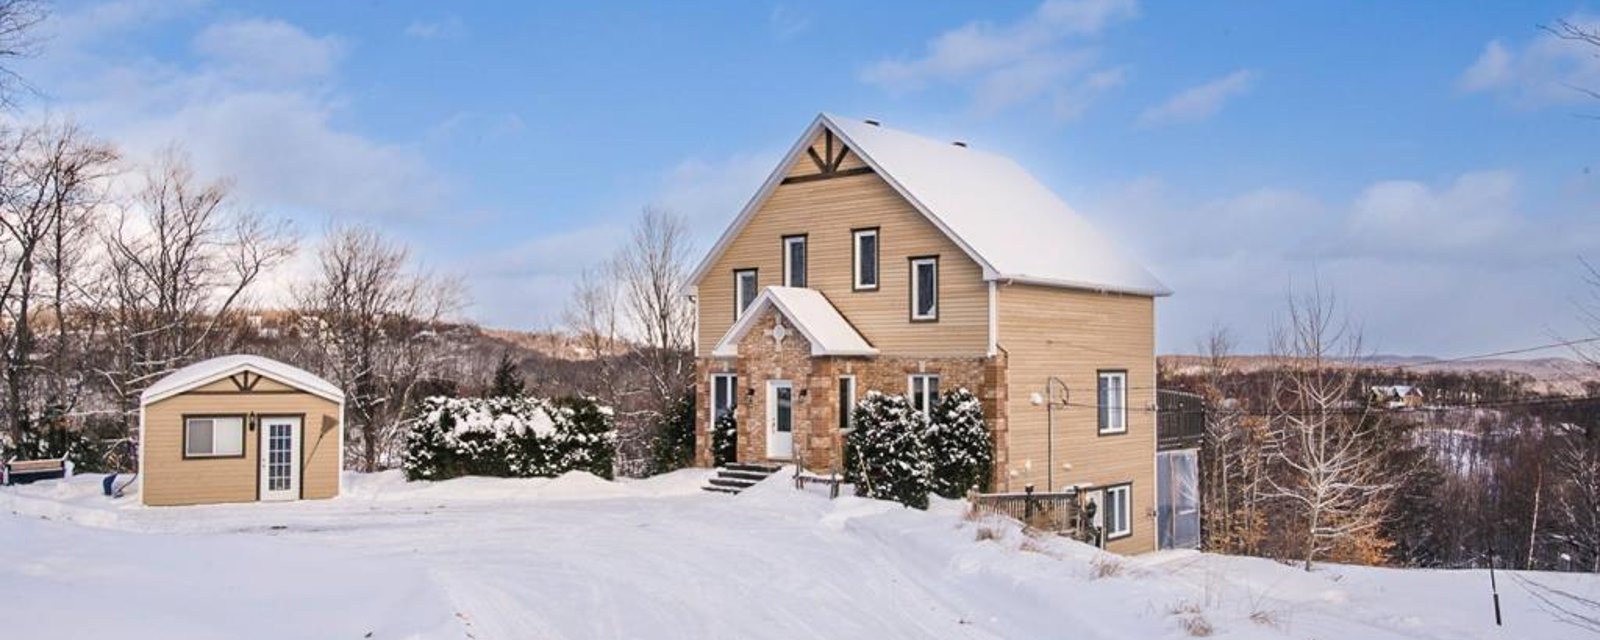 Spacieux cottage avec des finitions de qualité et une vue imprenable sur les montagnes et pentes de ski